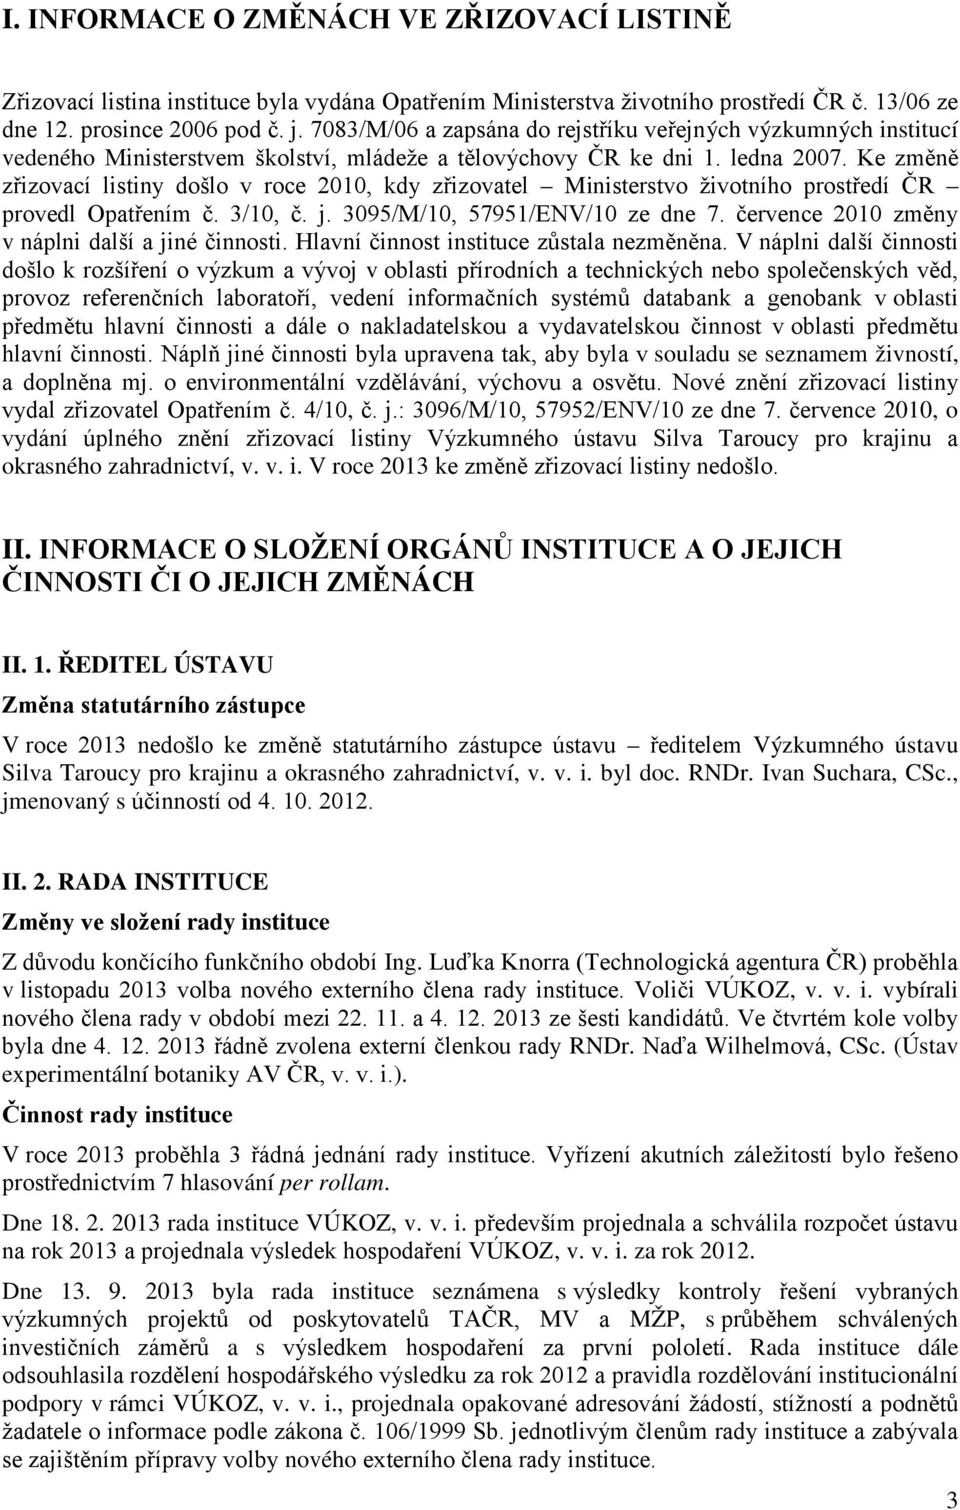 Ke změně zřizovací listiny došlo v roce 2010, kdy zřizovatel Ministerstvo životního prostředí ČR provedl Opatřením č. 3/10, č. j. 3095/M/10, 57951/ENV/10 ze dne 7.